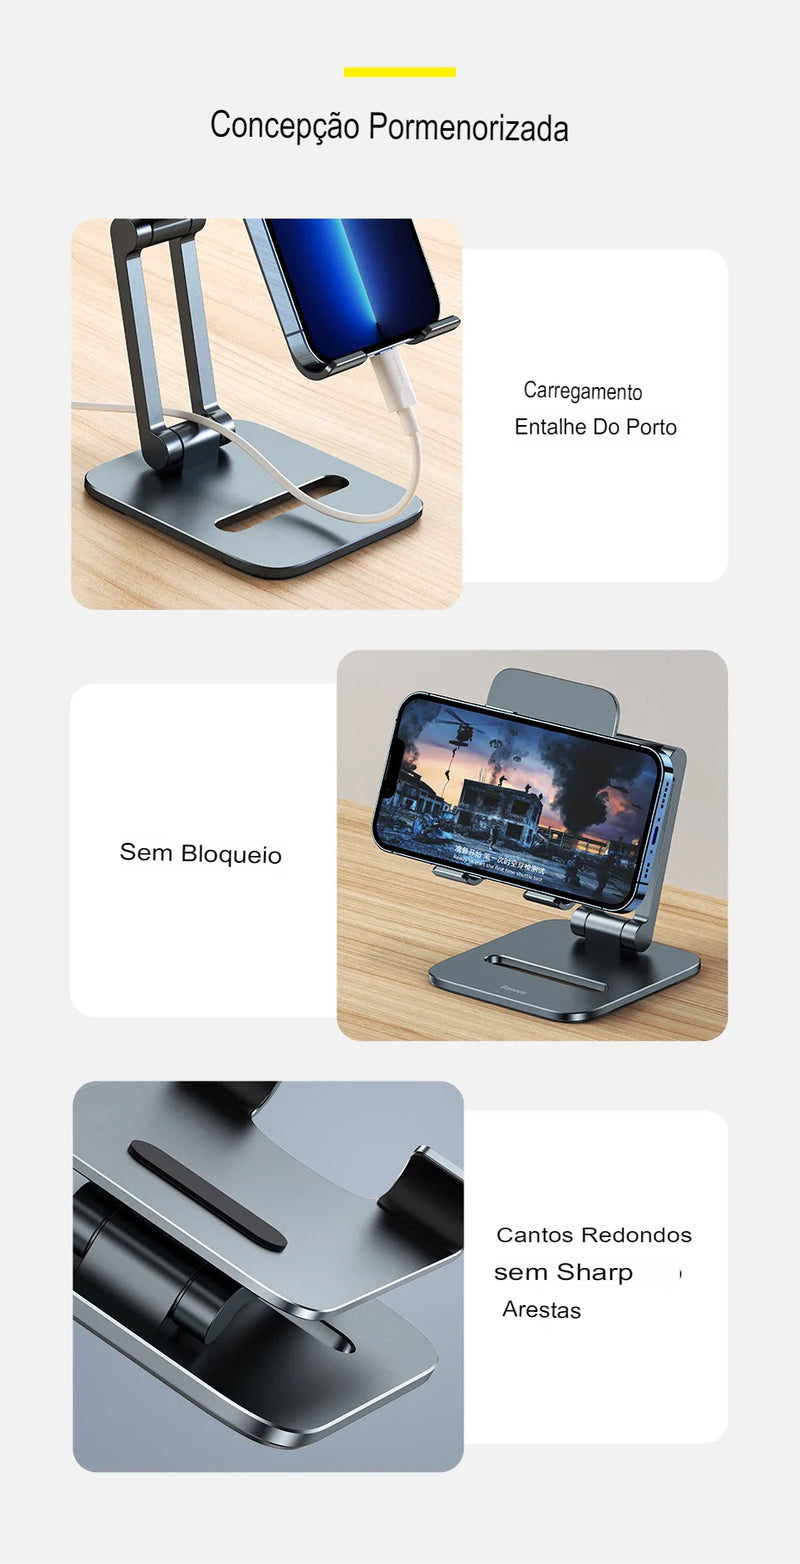 Baseus suporte de telefone suporte de mesa para celular tablet suporte dobrável para iphone 13 12 ipad pro air metal